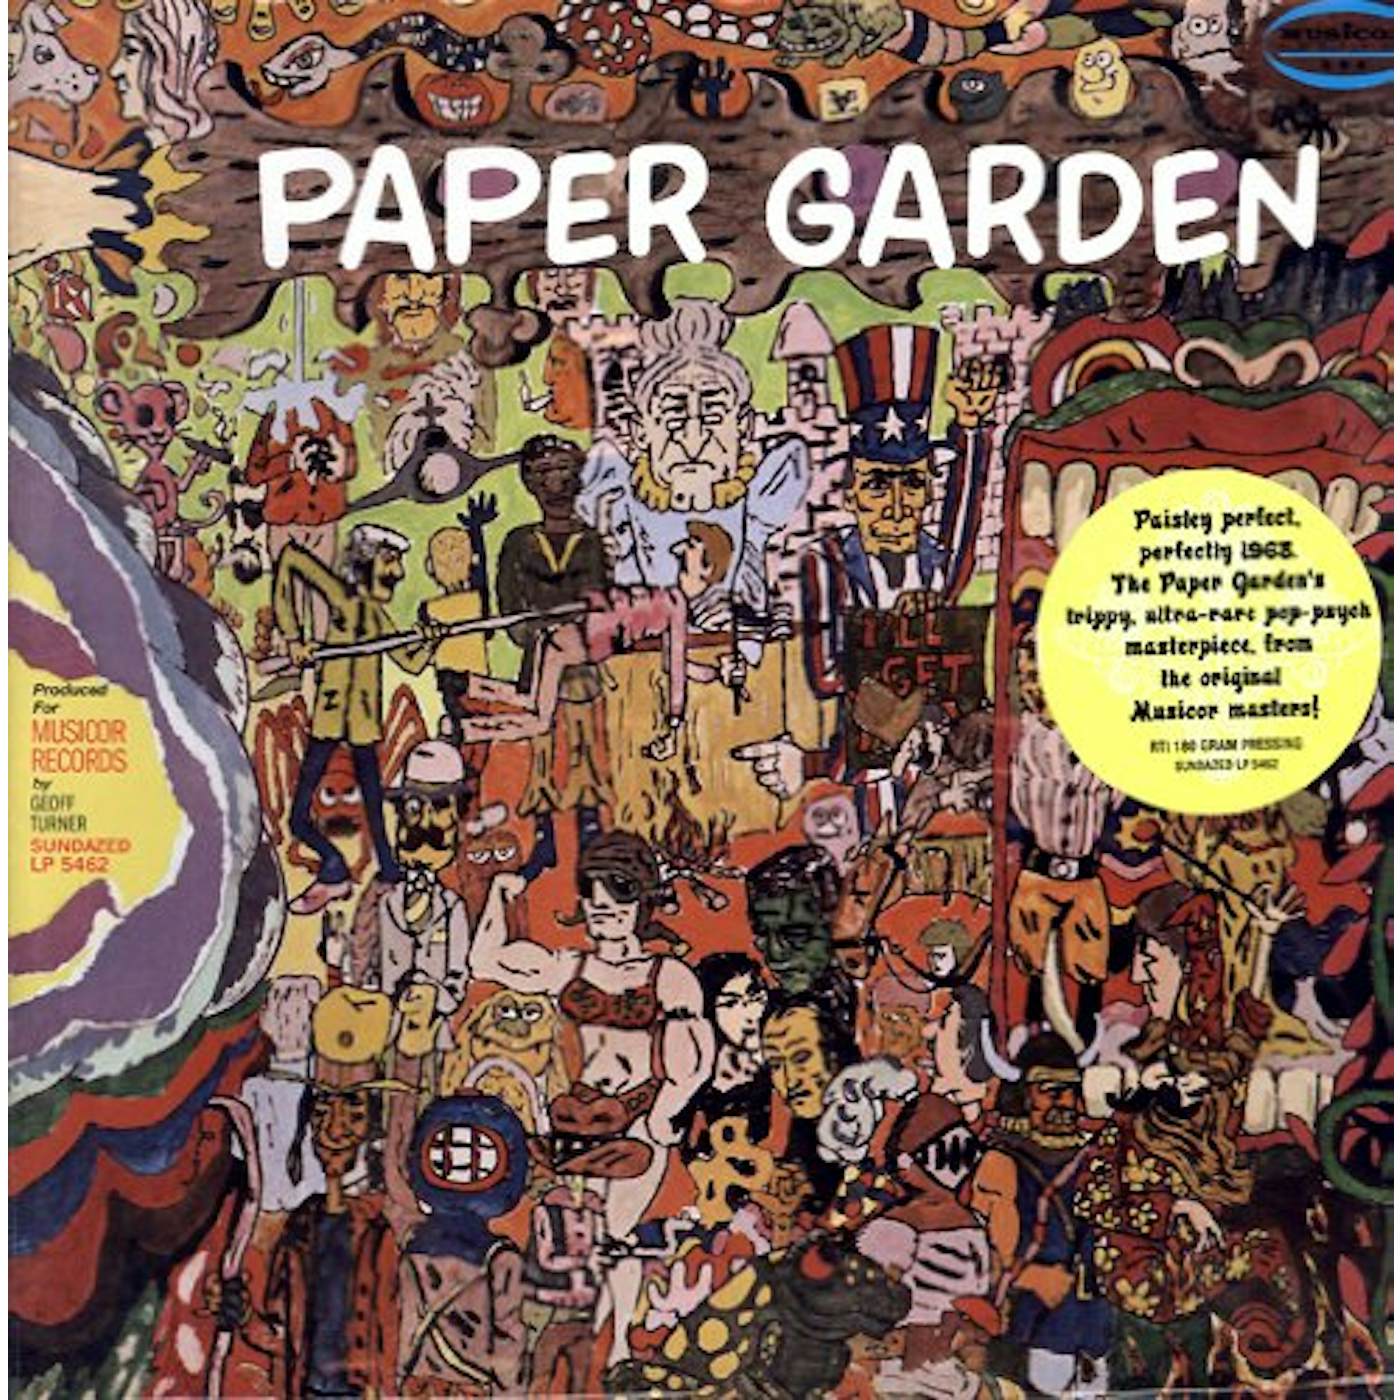 Paper Garden Vinyl Record